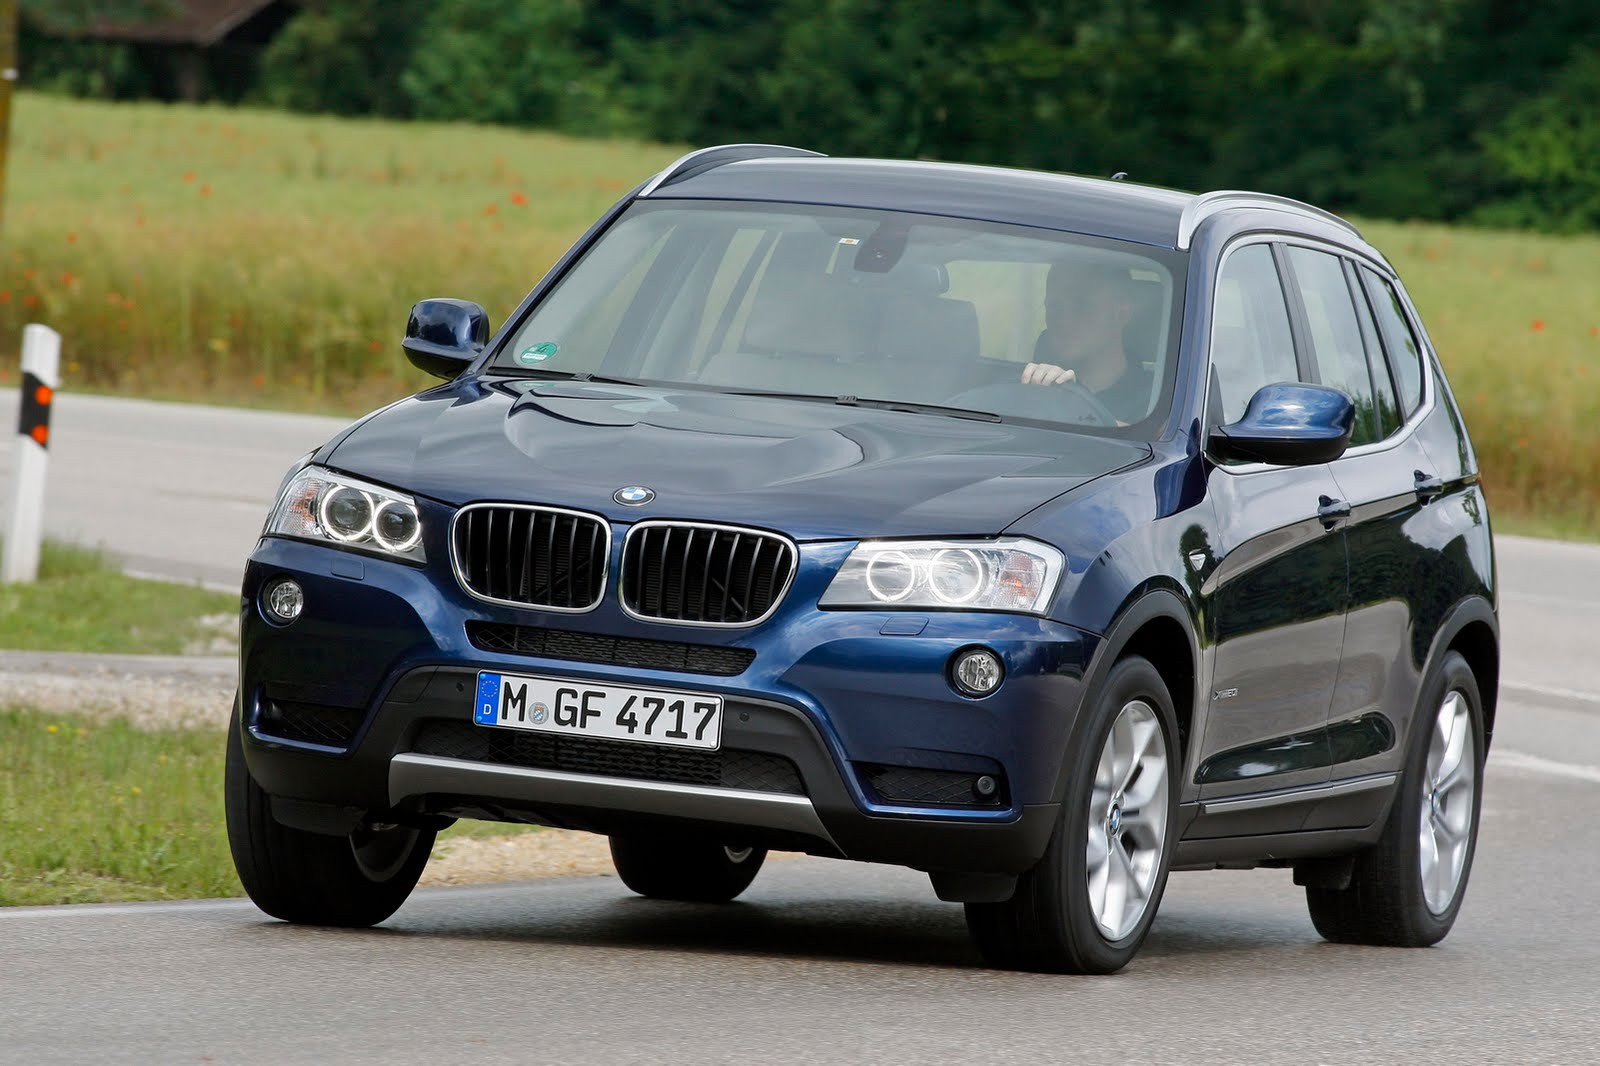 BMW X3 xDrive28i gets a new EPA rating